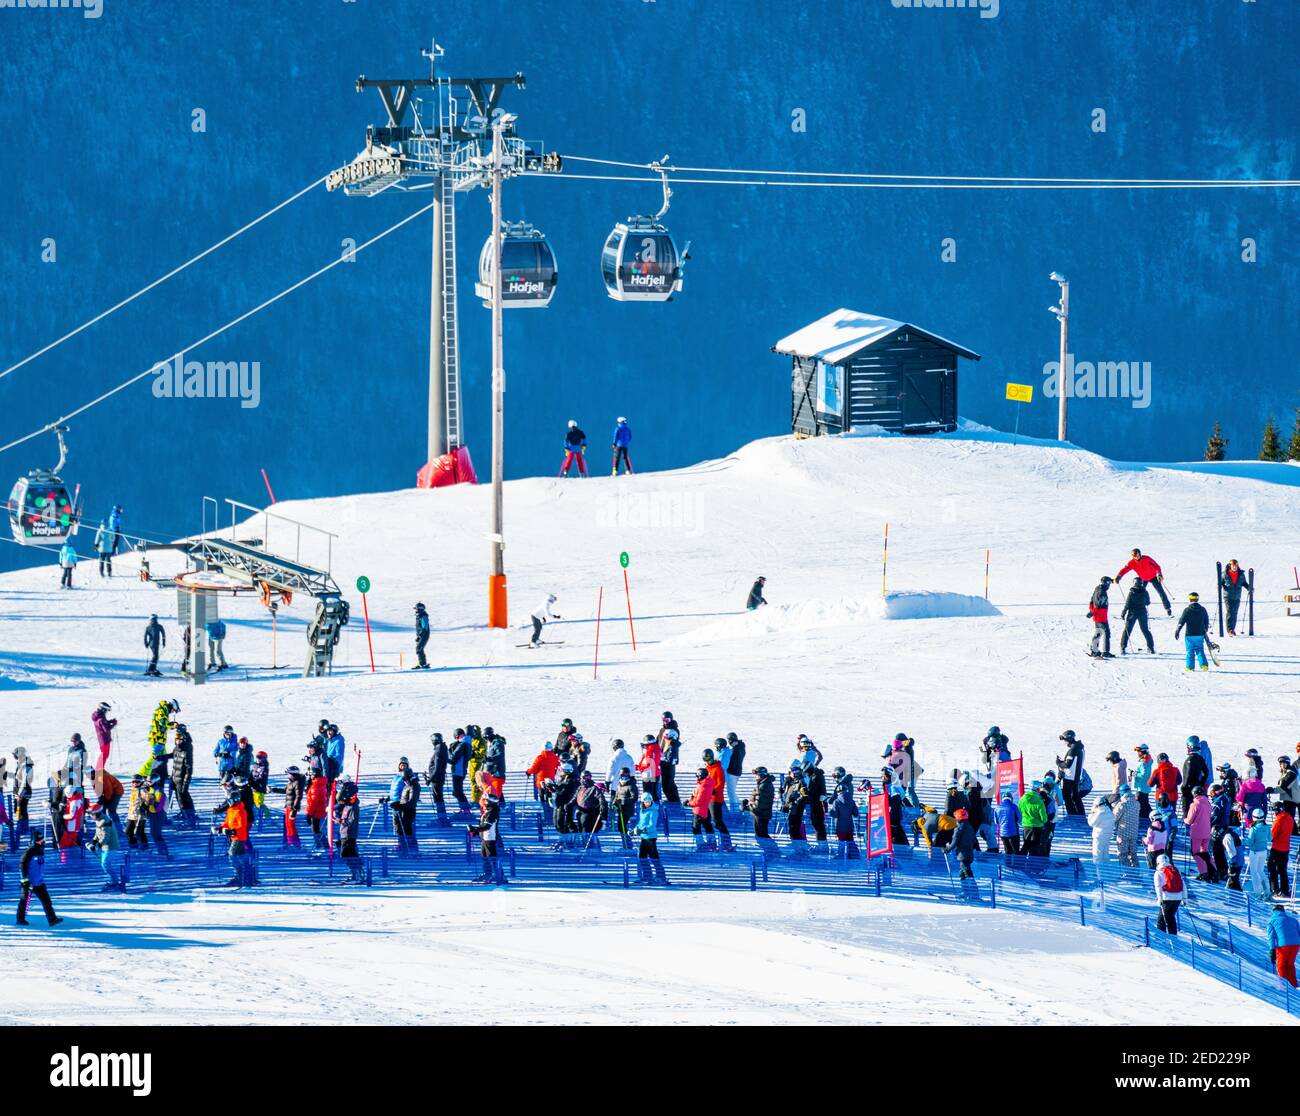 Des foules de personnes attendent en file d'attente près du télésiège de la station de ski alpin de Hafjell. Banque D'Images